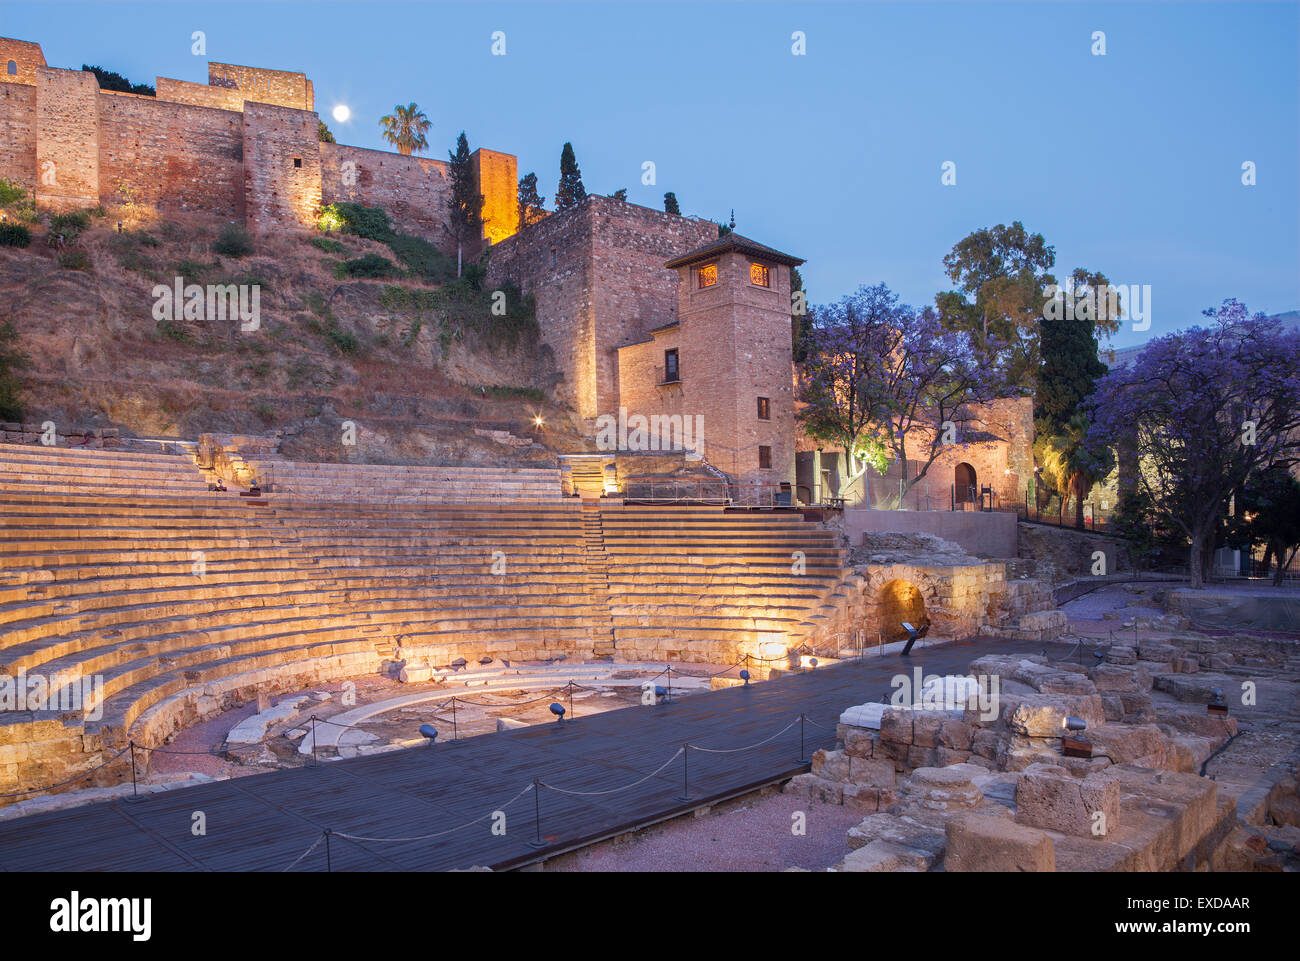 Malaga - The Ruins of Rome amfiteater (Anfiteatro de Malaga) at dusk Stock Photo